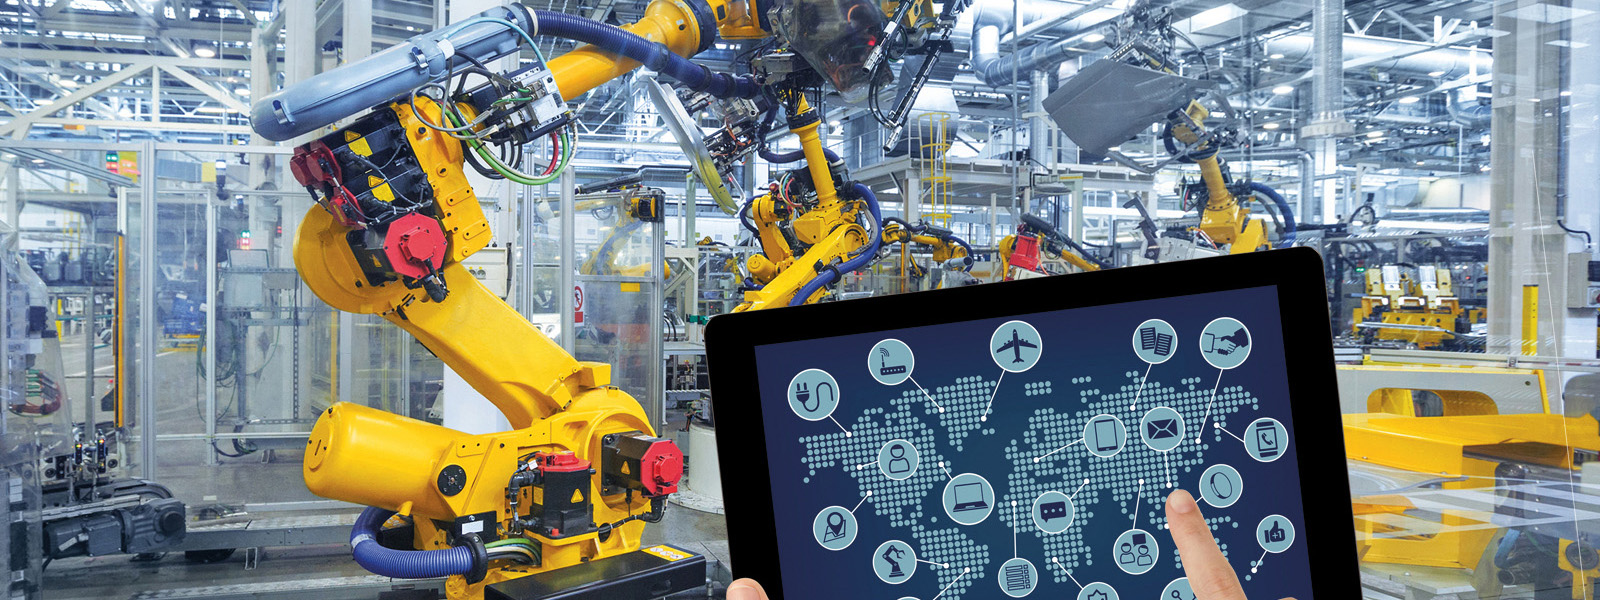 Tecnico superiore per l’automazione e i sistemi meccatronici: verso l’industry 4.0 